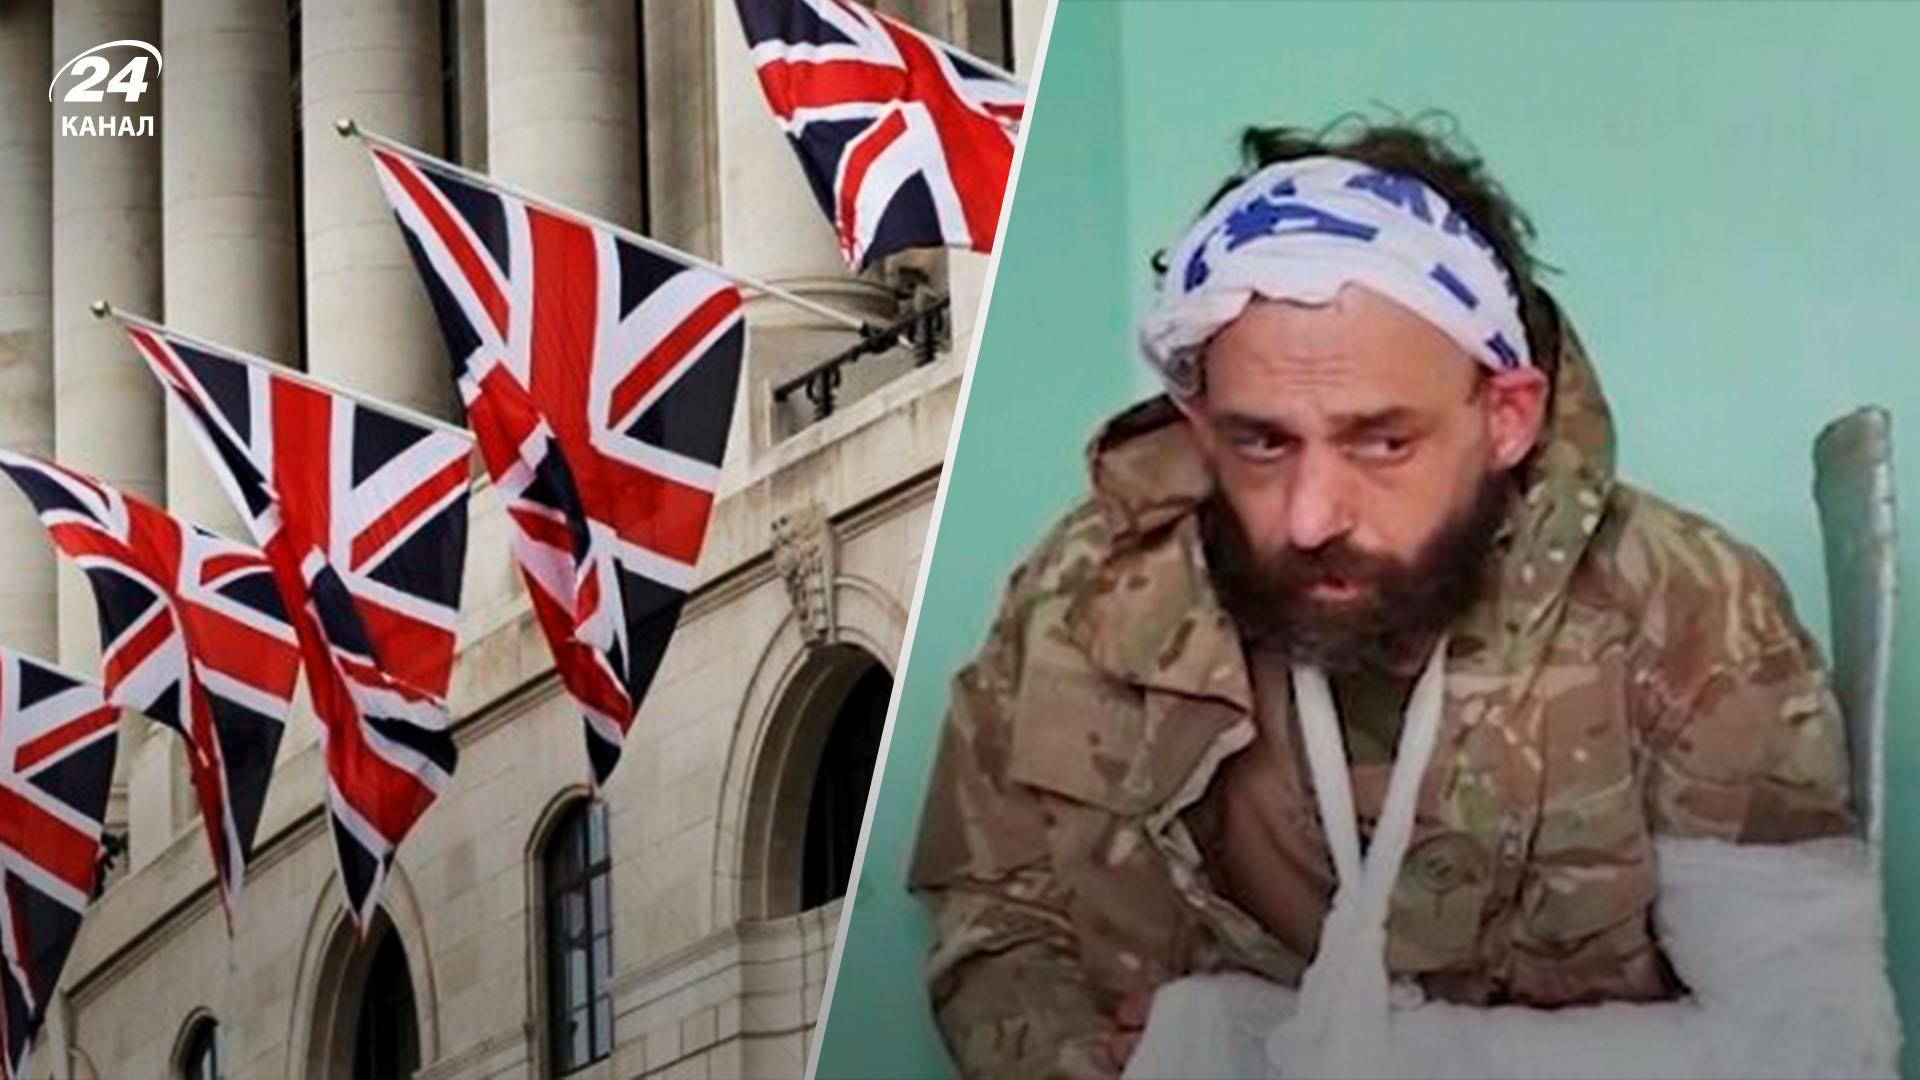 МИД Британии заинтересовался пропагандистским видео с пленным британским добровольцем